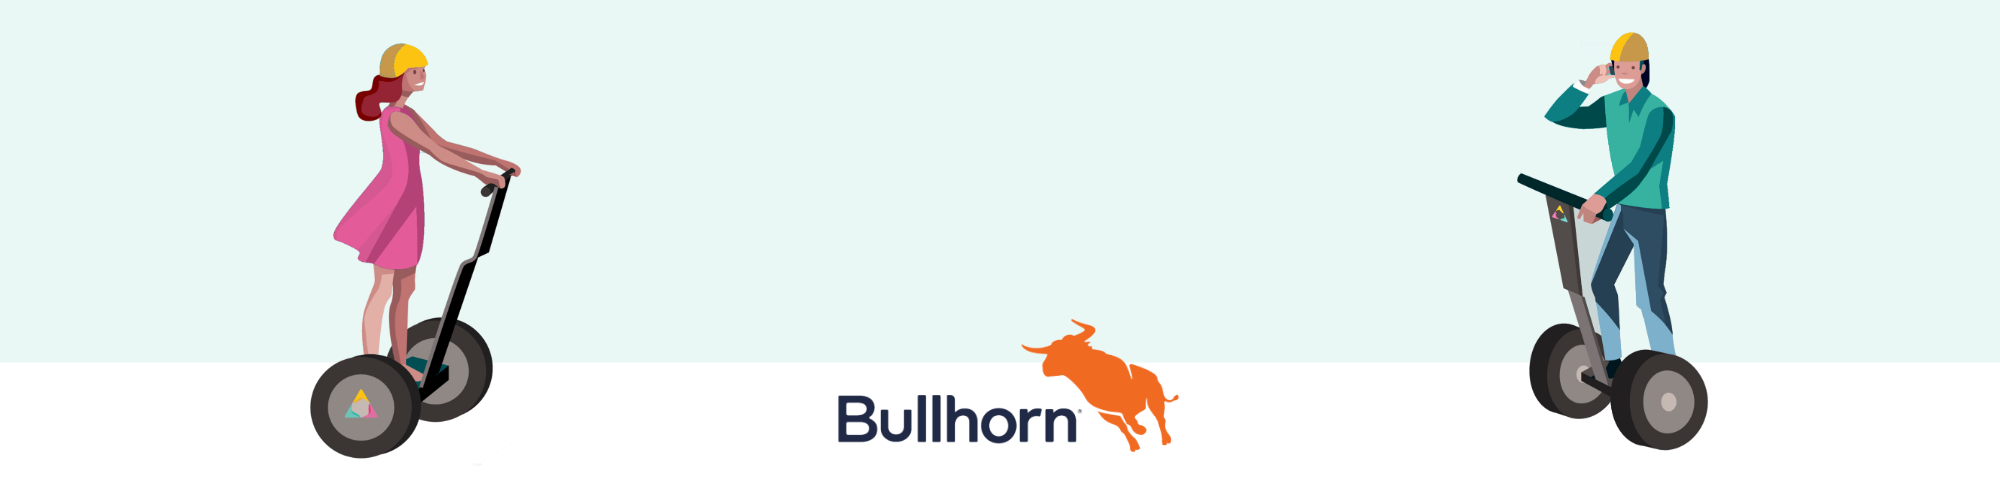 Best Bullhorn Recruitment Tips